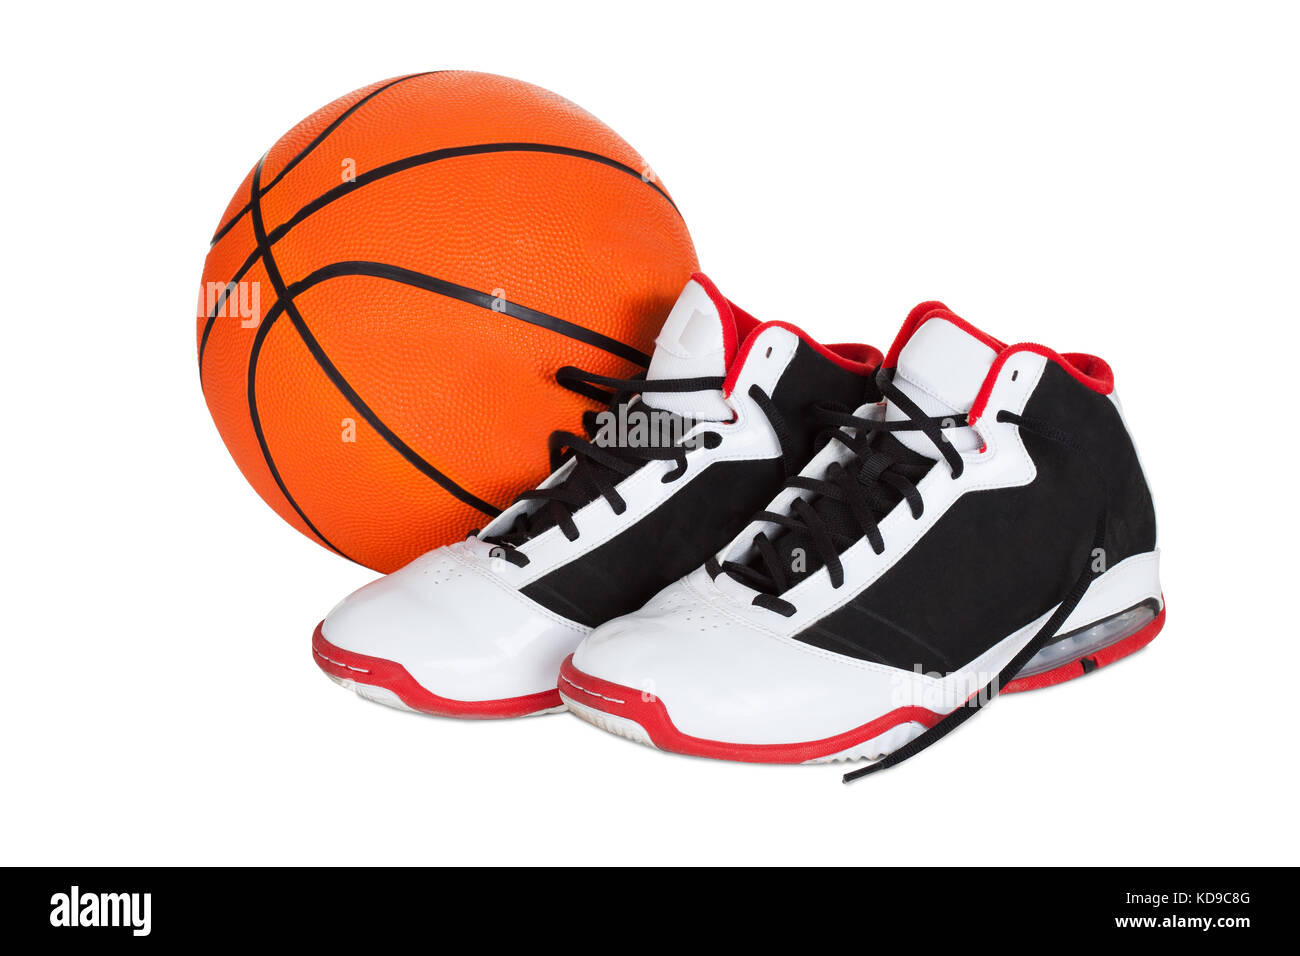 Paire de chaussures de basket-ball. isolé sur fond blanc Photo Stock - Alamy